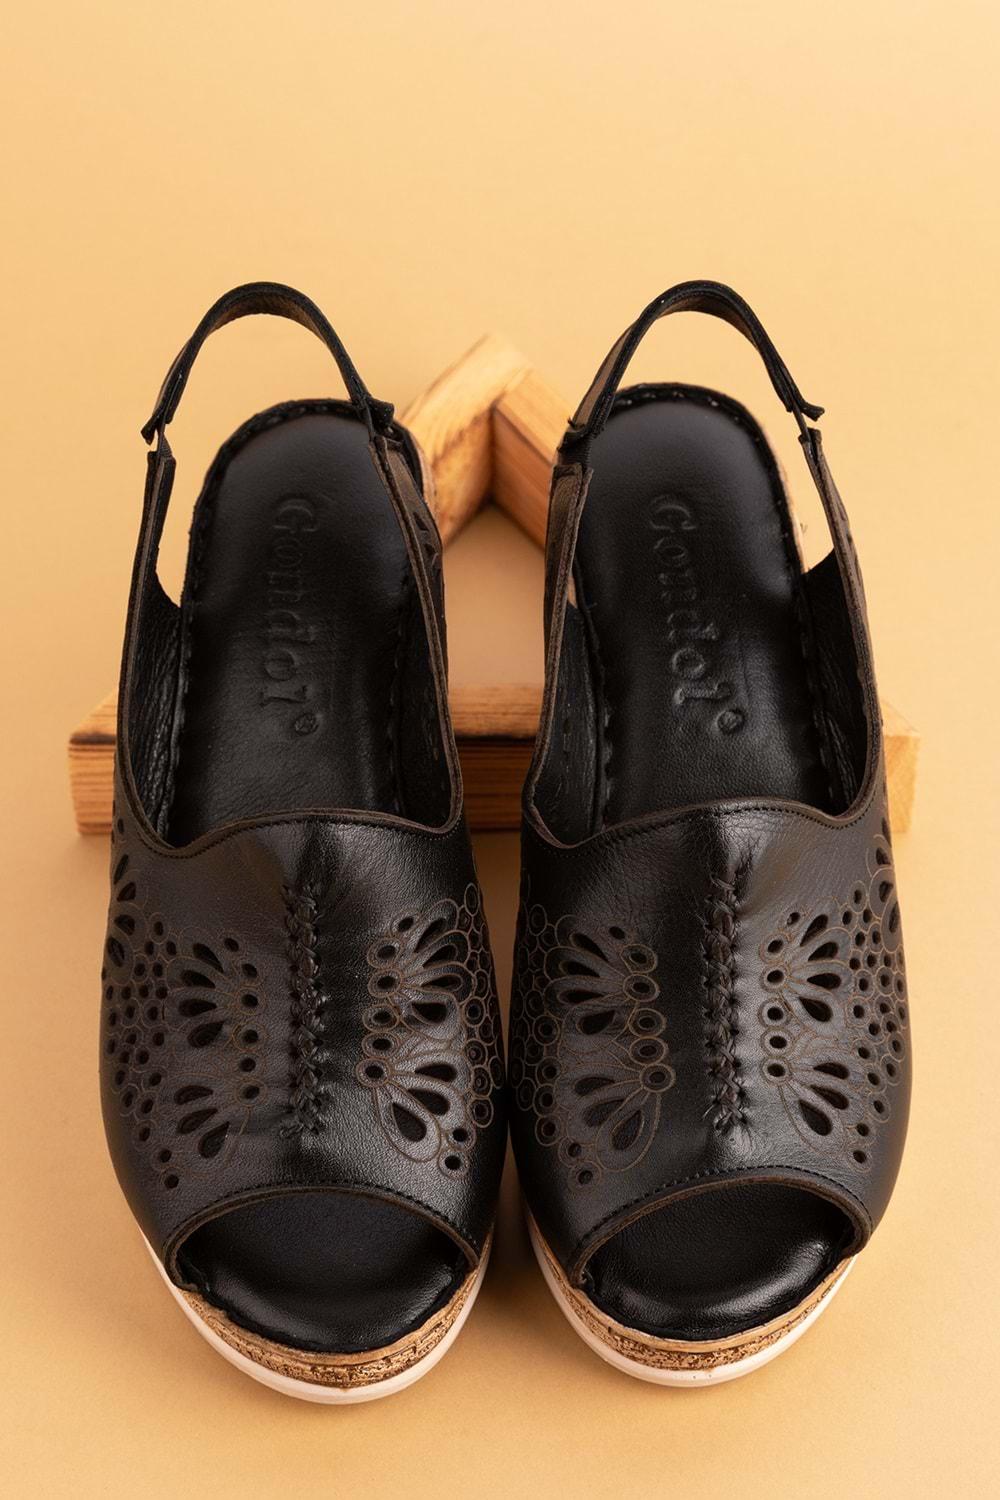 Gondol Hakiki Deri Dolgu Topuklı Yumuşak Taban Rahat Sandalet irm.77 - Siyah - 36